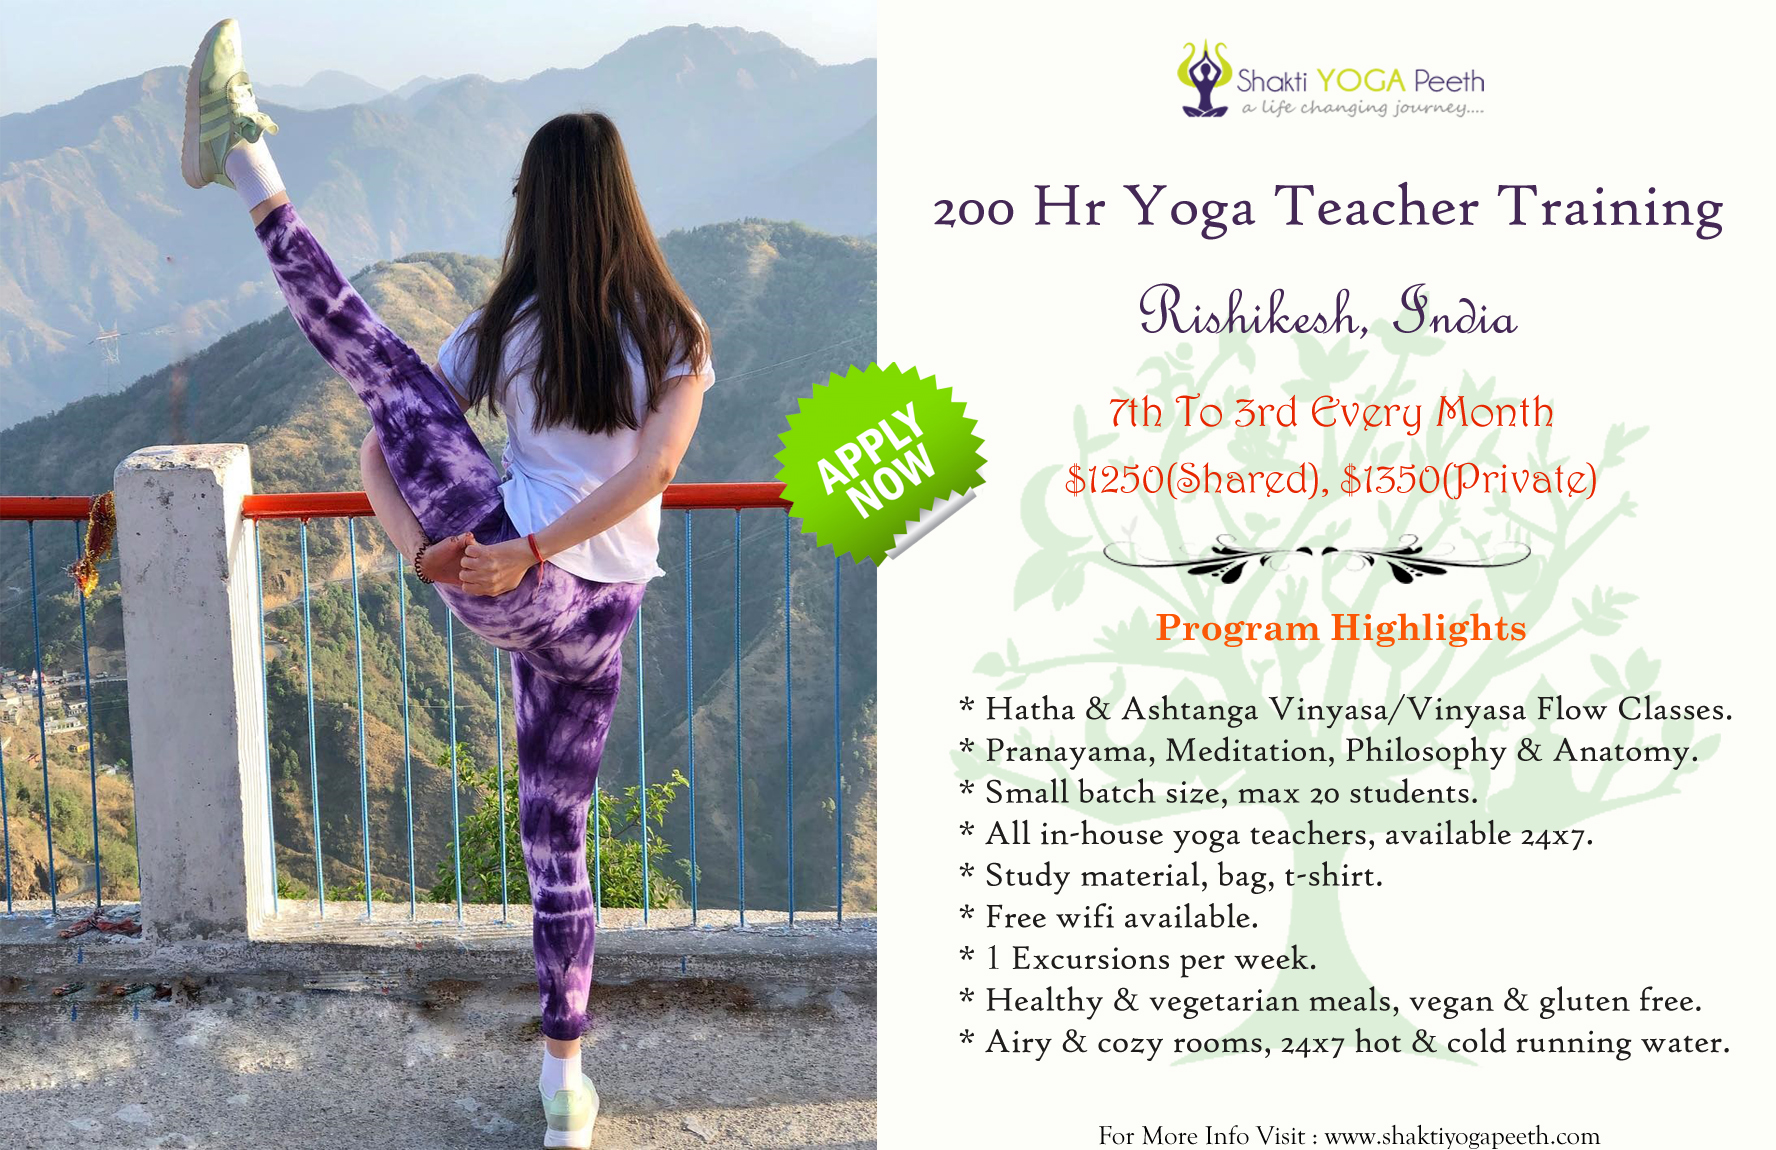 Enrol For 200 Hr Yoga Teacher Training in Rishikesh